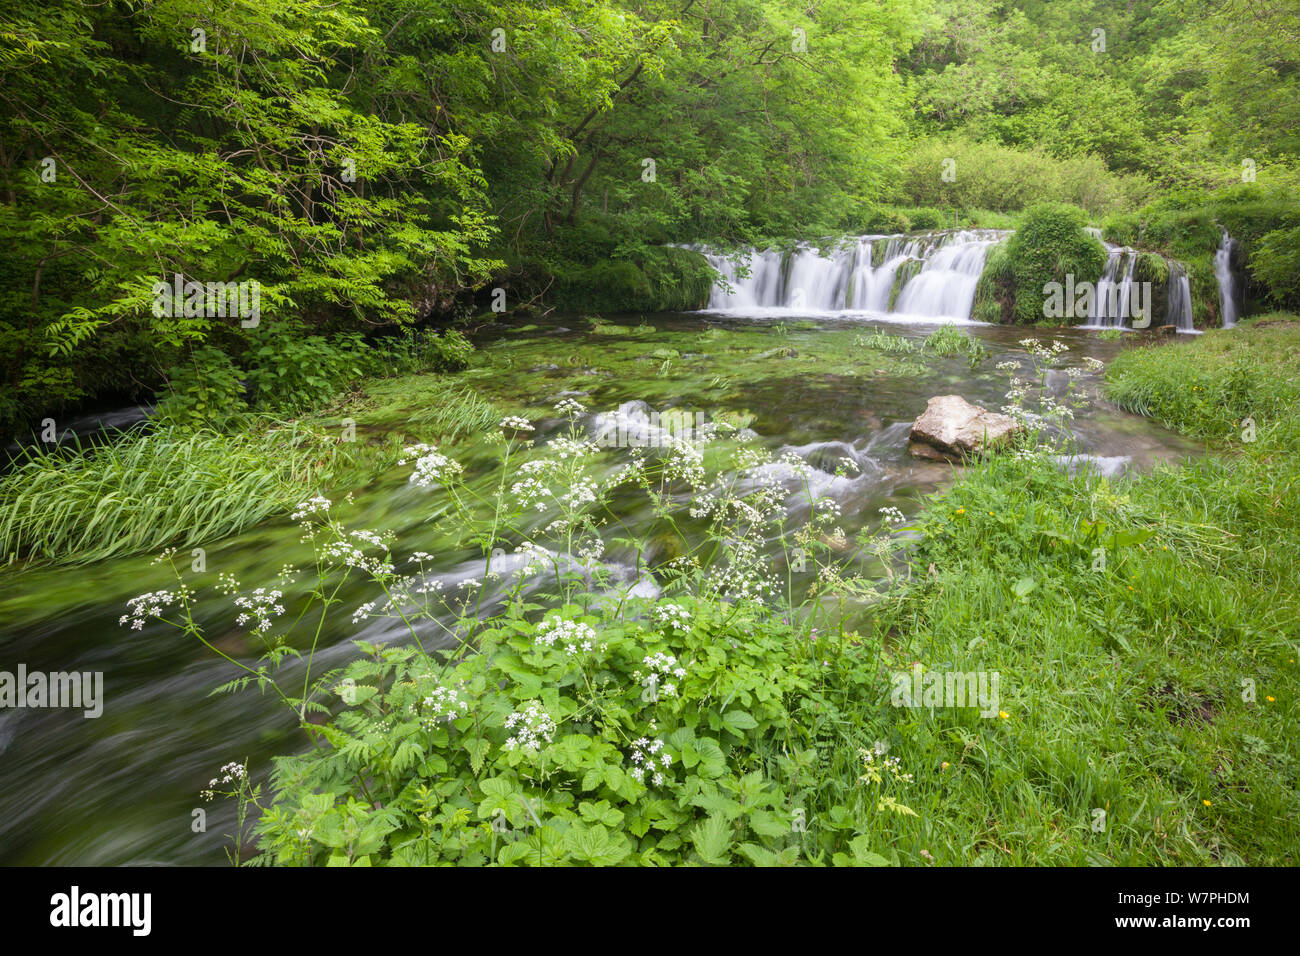 Der Fluss Lathkill. Lathkill Dale National Nature Reserve (SSSI), Peak District National Park, Großbritannien. Juni. Jahreszeiten Sequenz 1 von 2: Sommer. Stockfoto